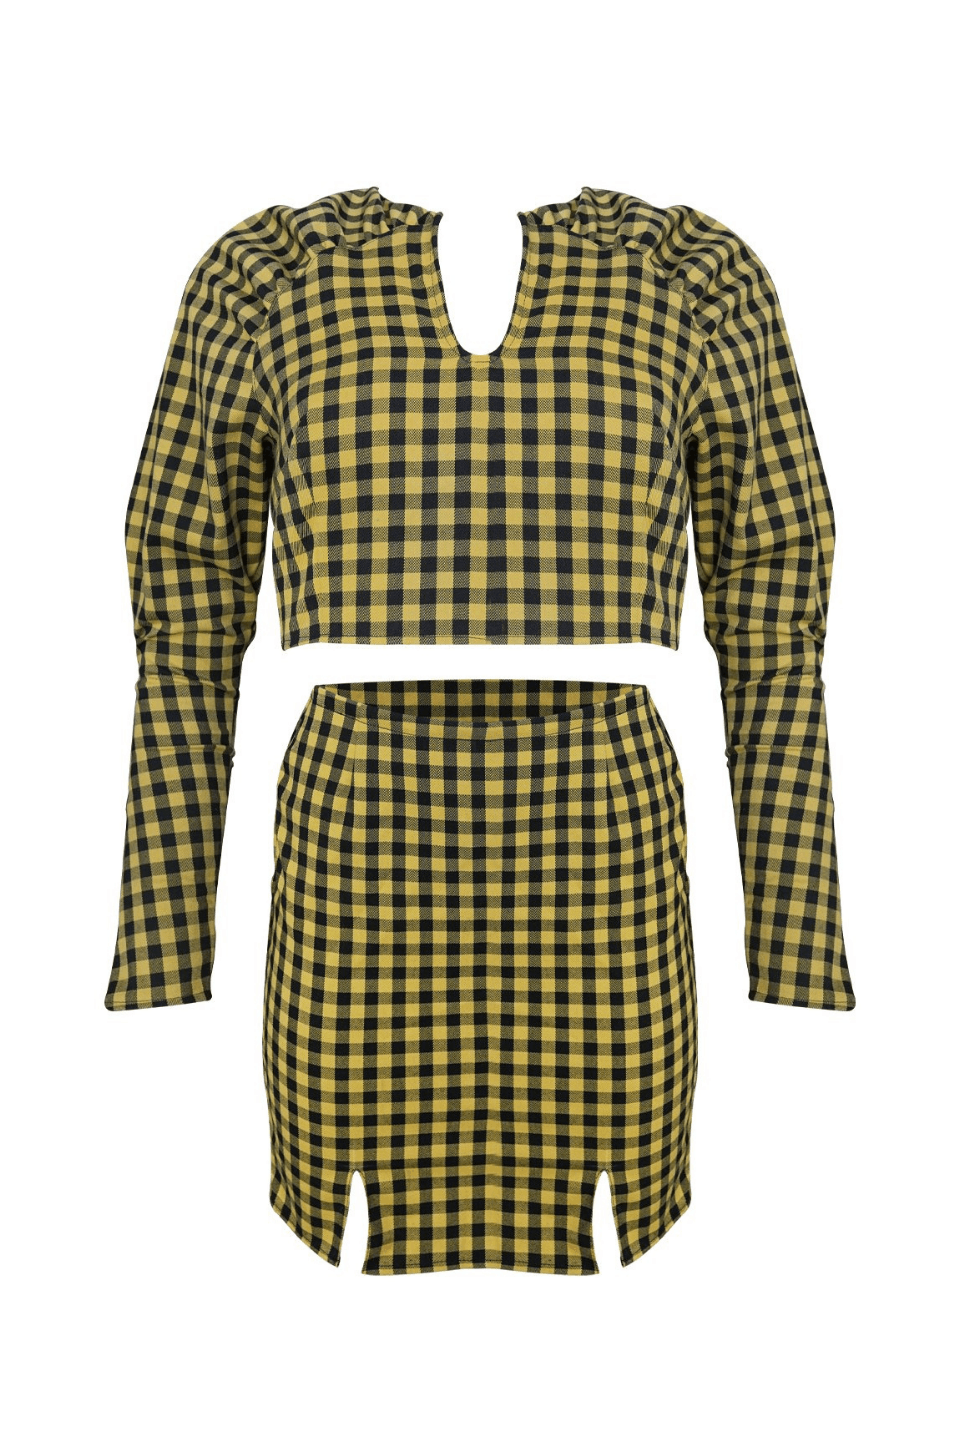 Komplet KIMMI bluzka + spódniczka - żółto-czarny - Chiara Wear